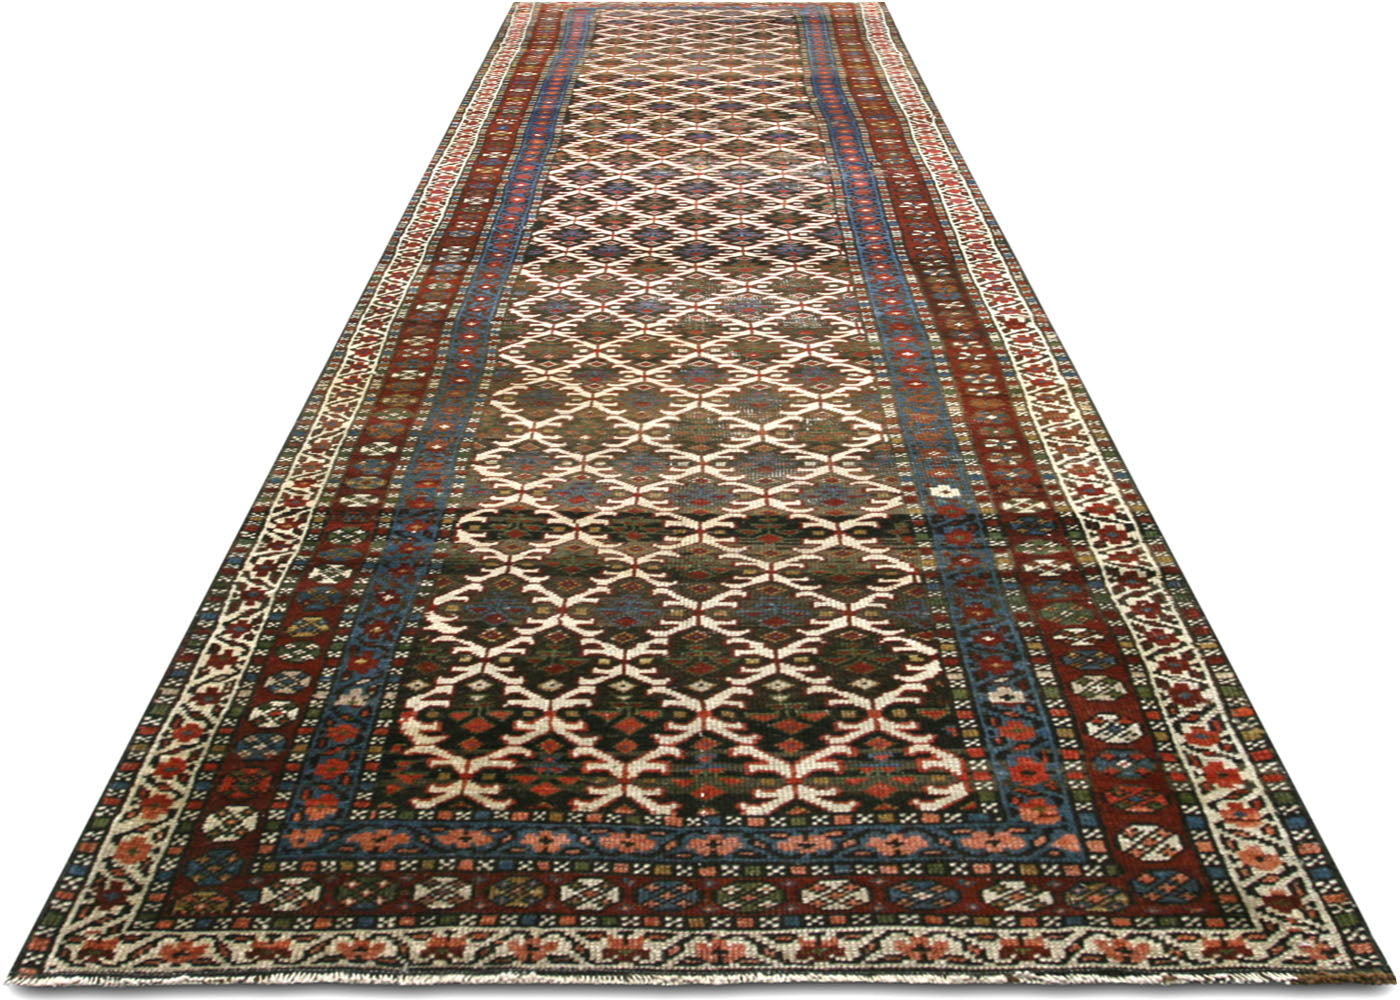 Antique Persian Heriz Runner - 3'1" x 14'